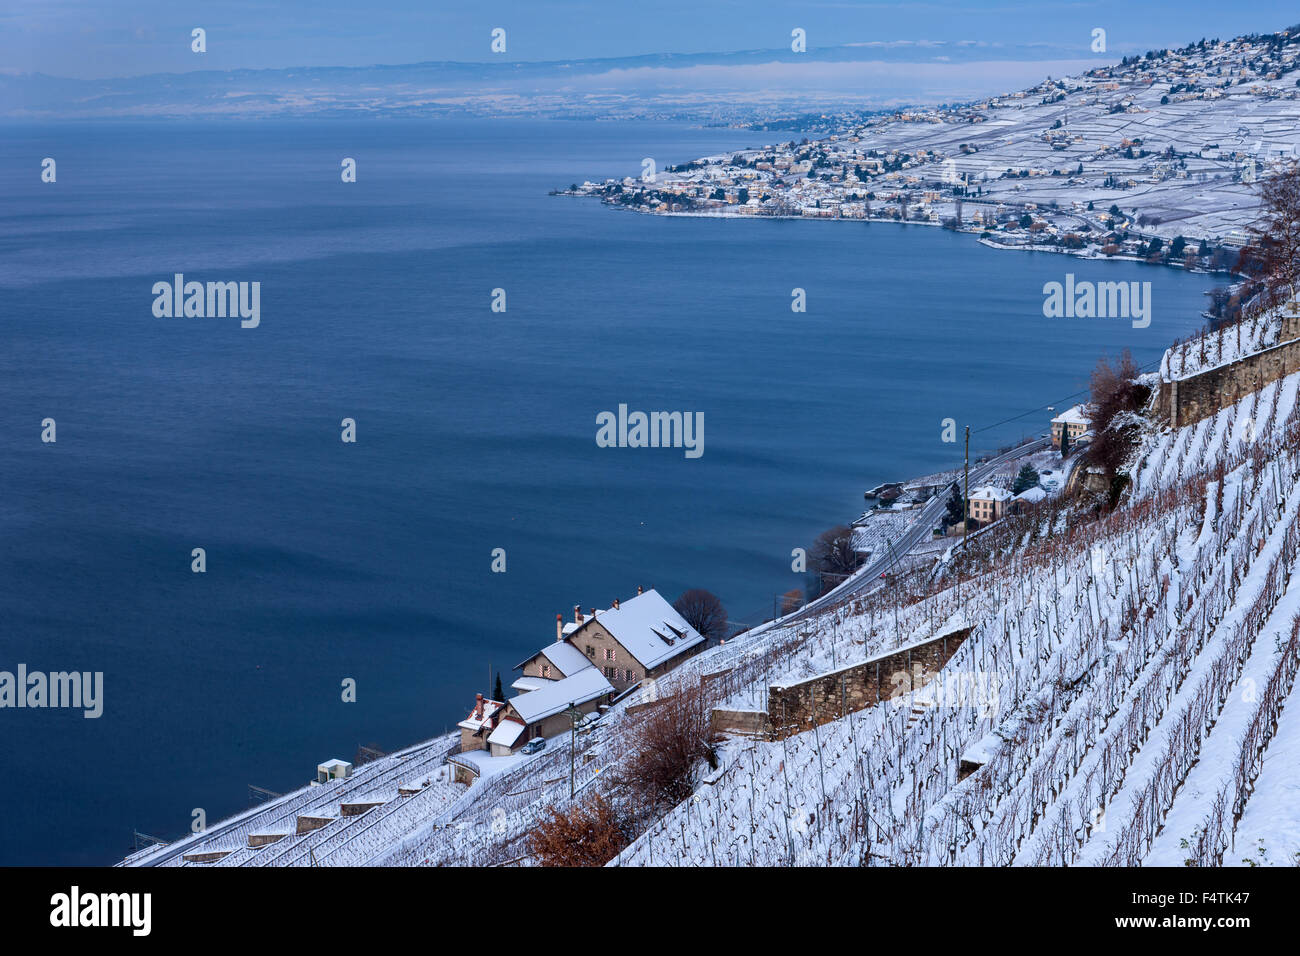 Lake geneva switzerland winter hi-res stock photography and images - Alamy